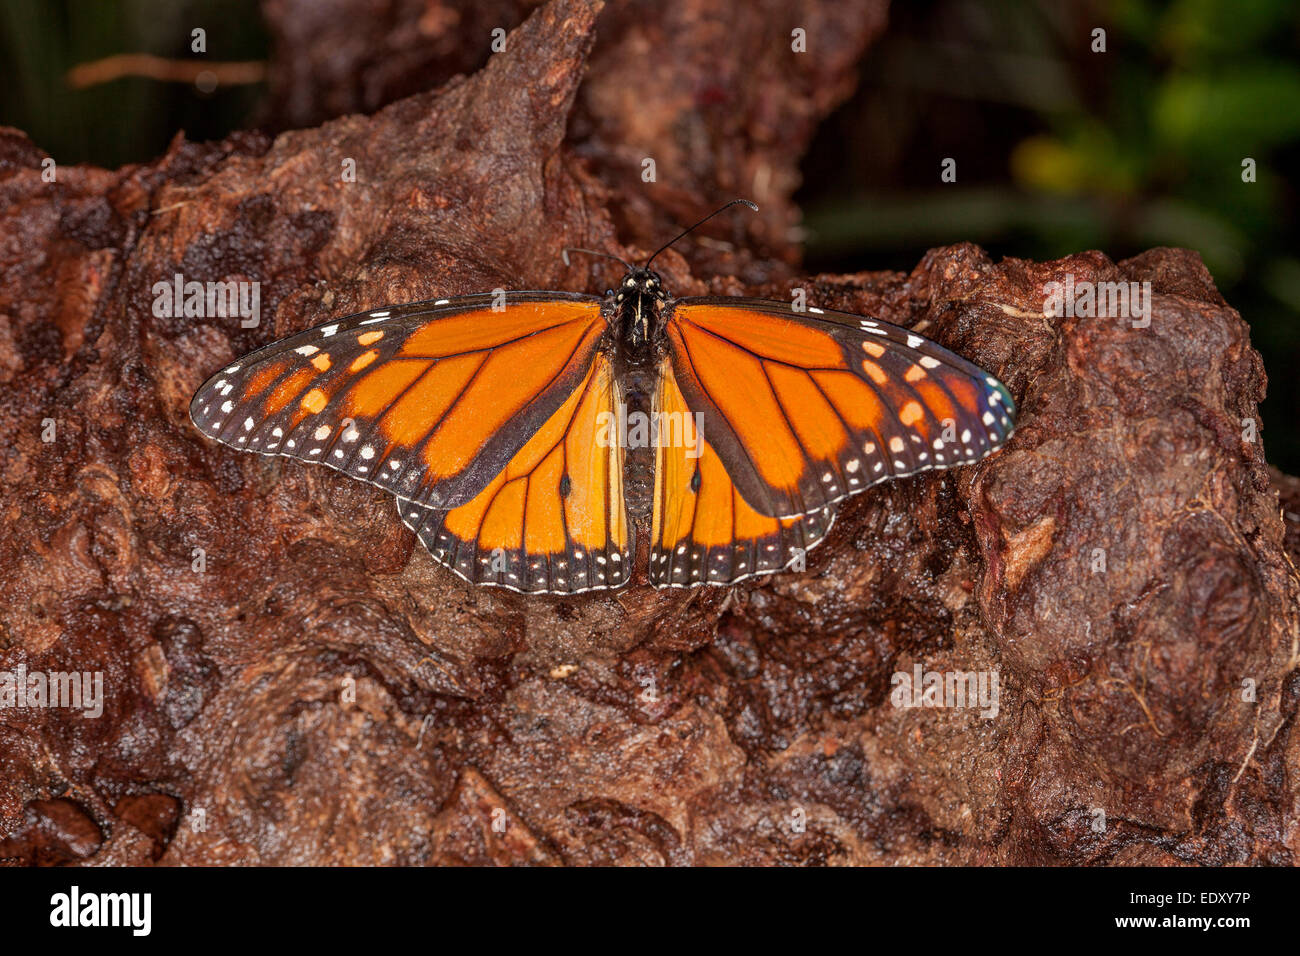 Arancione e nero Monarch / Wanderer farfalla con ali distese sul registro marrone Foto Stock